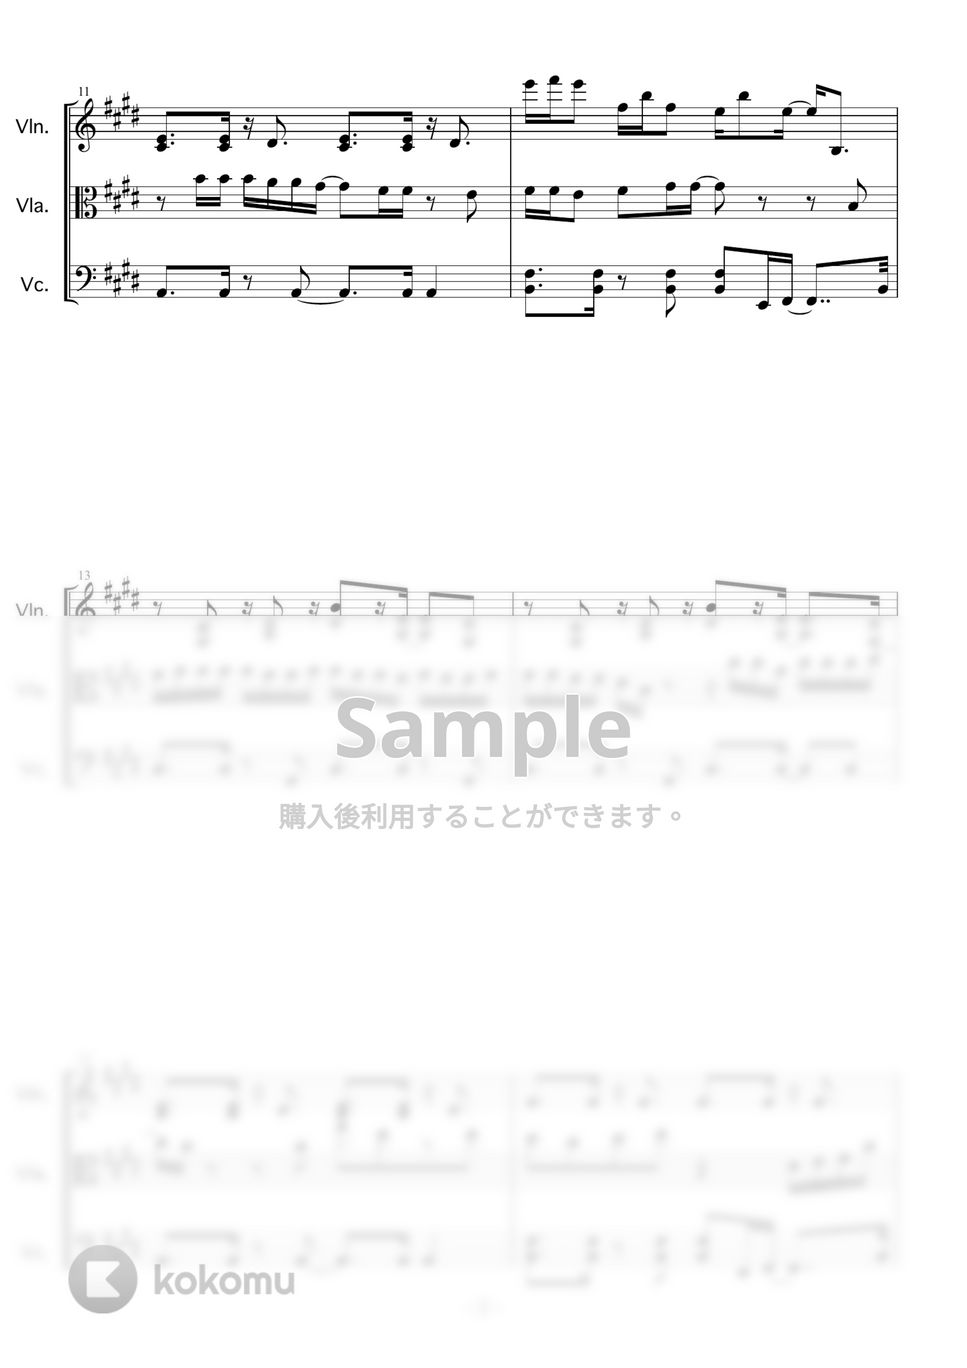 欅坂46 - 黒い羊 by PANDAYA